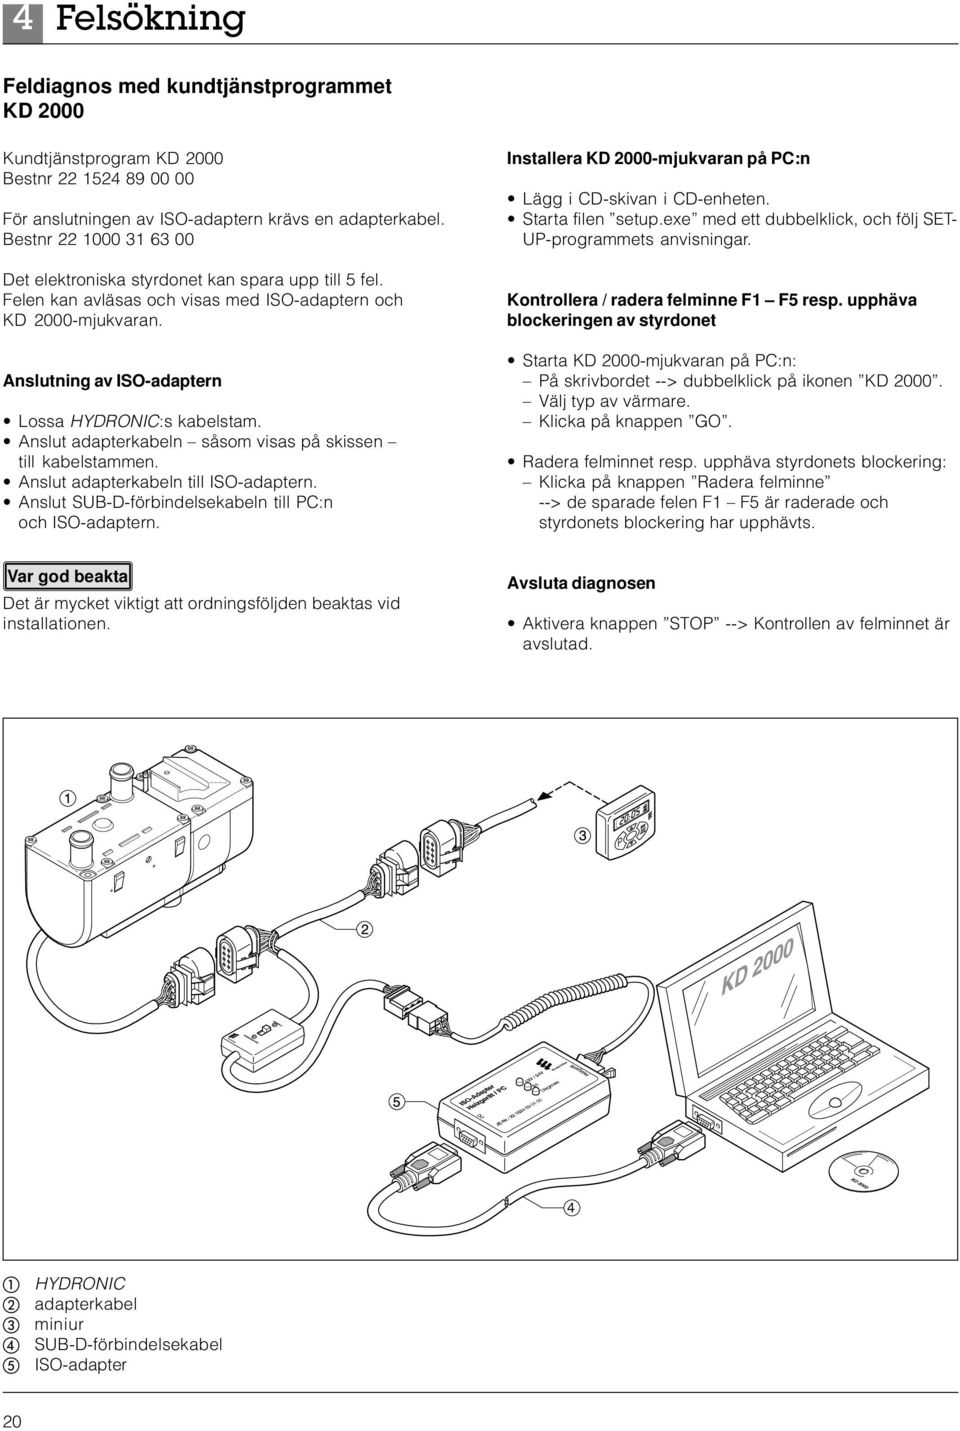 Anslut adapterkabeln såsom visas på skissen till kabelstammen. Anslut adapterkabeln till ISO-adaptern. Anslut SUB-D-förbindelsekabeln till PC:n och ISO-adaptern.